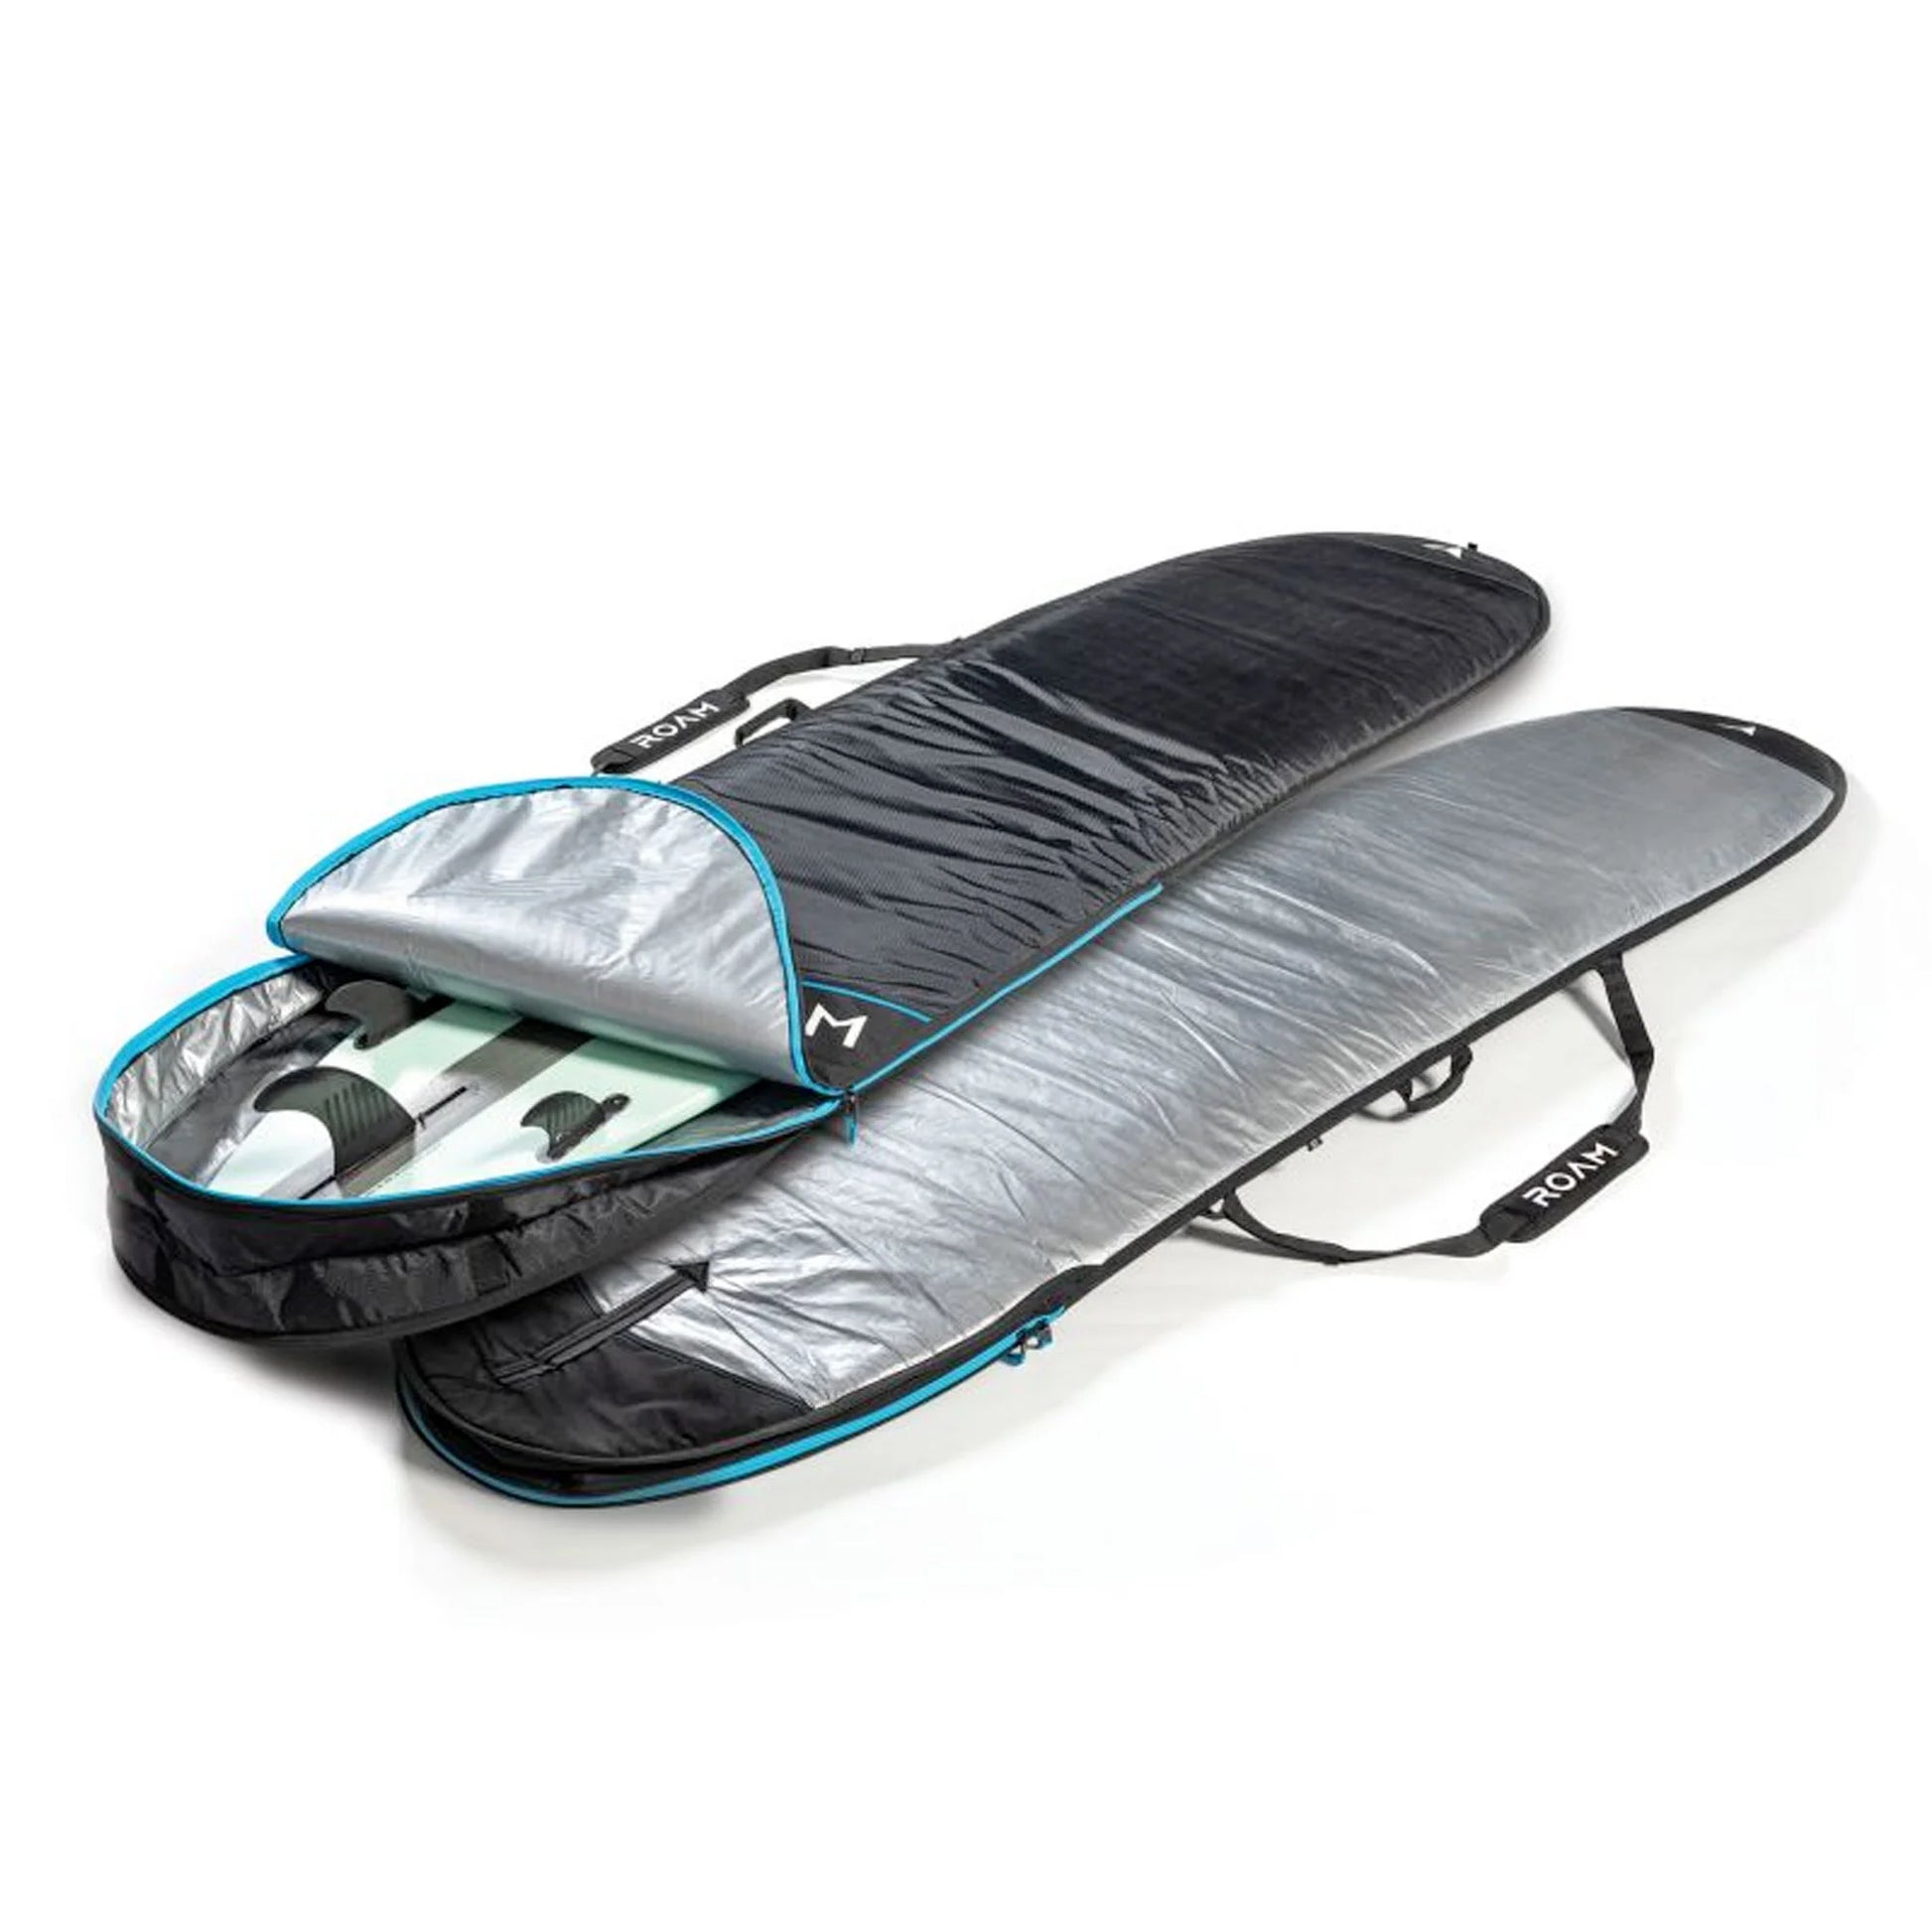 Roam Tech and Tech Plus Board Bag Cover surfboard bag 9'2 Tech Plus Board Bag